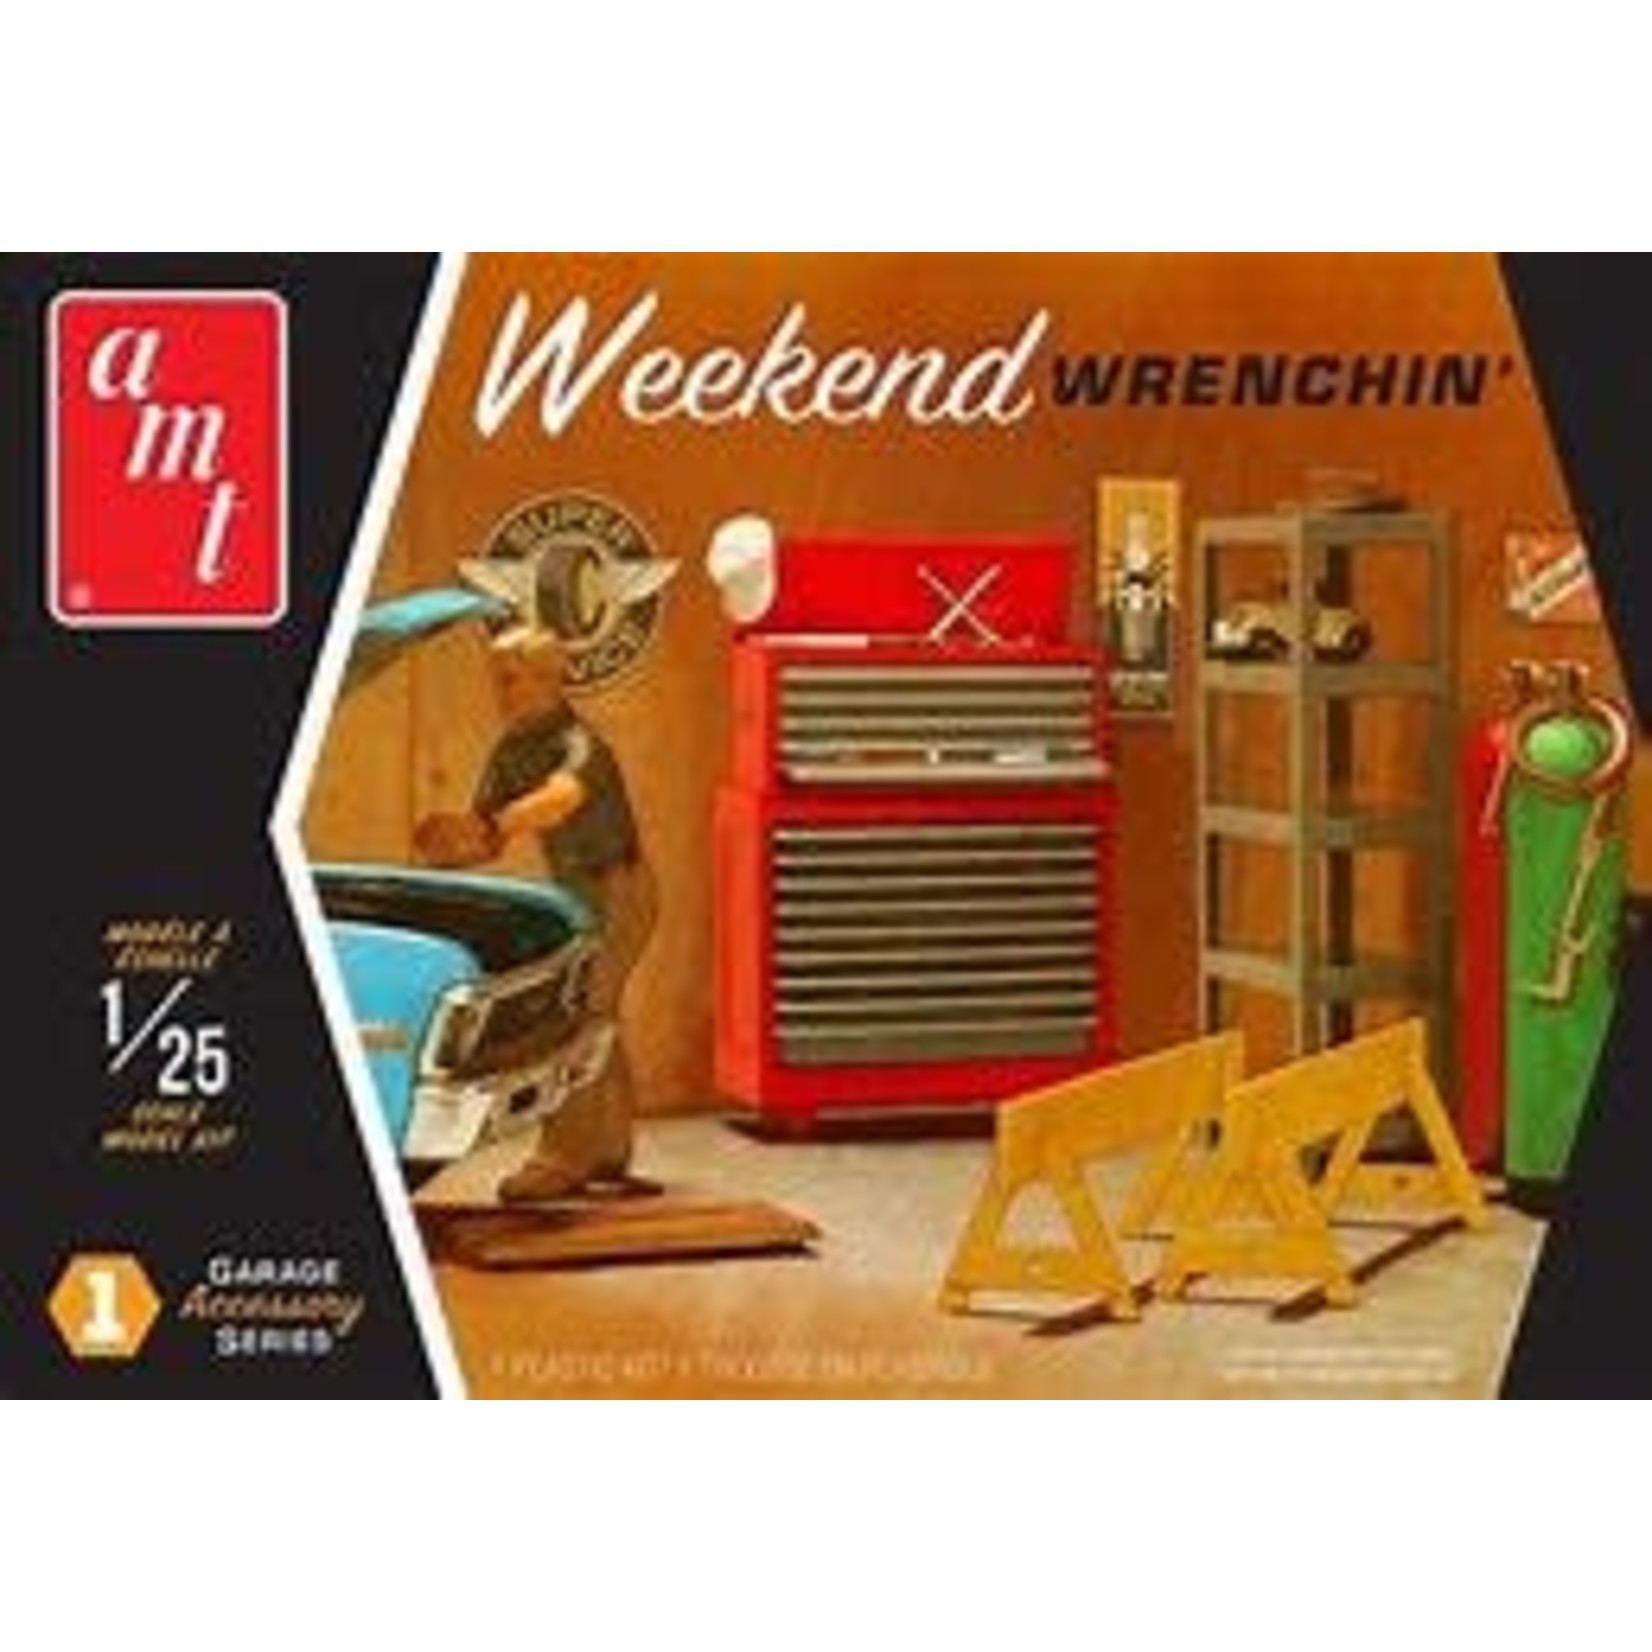 AMT Weekend Wrenching garage set